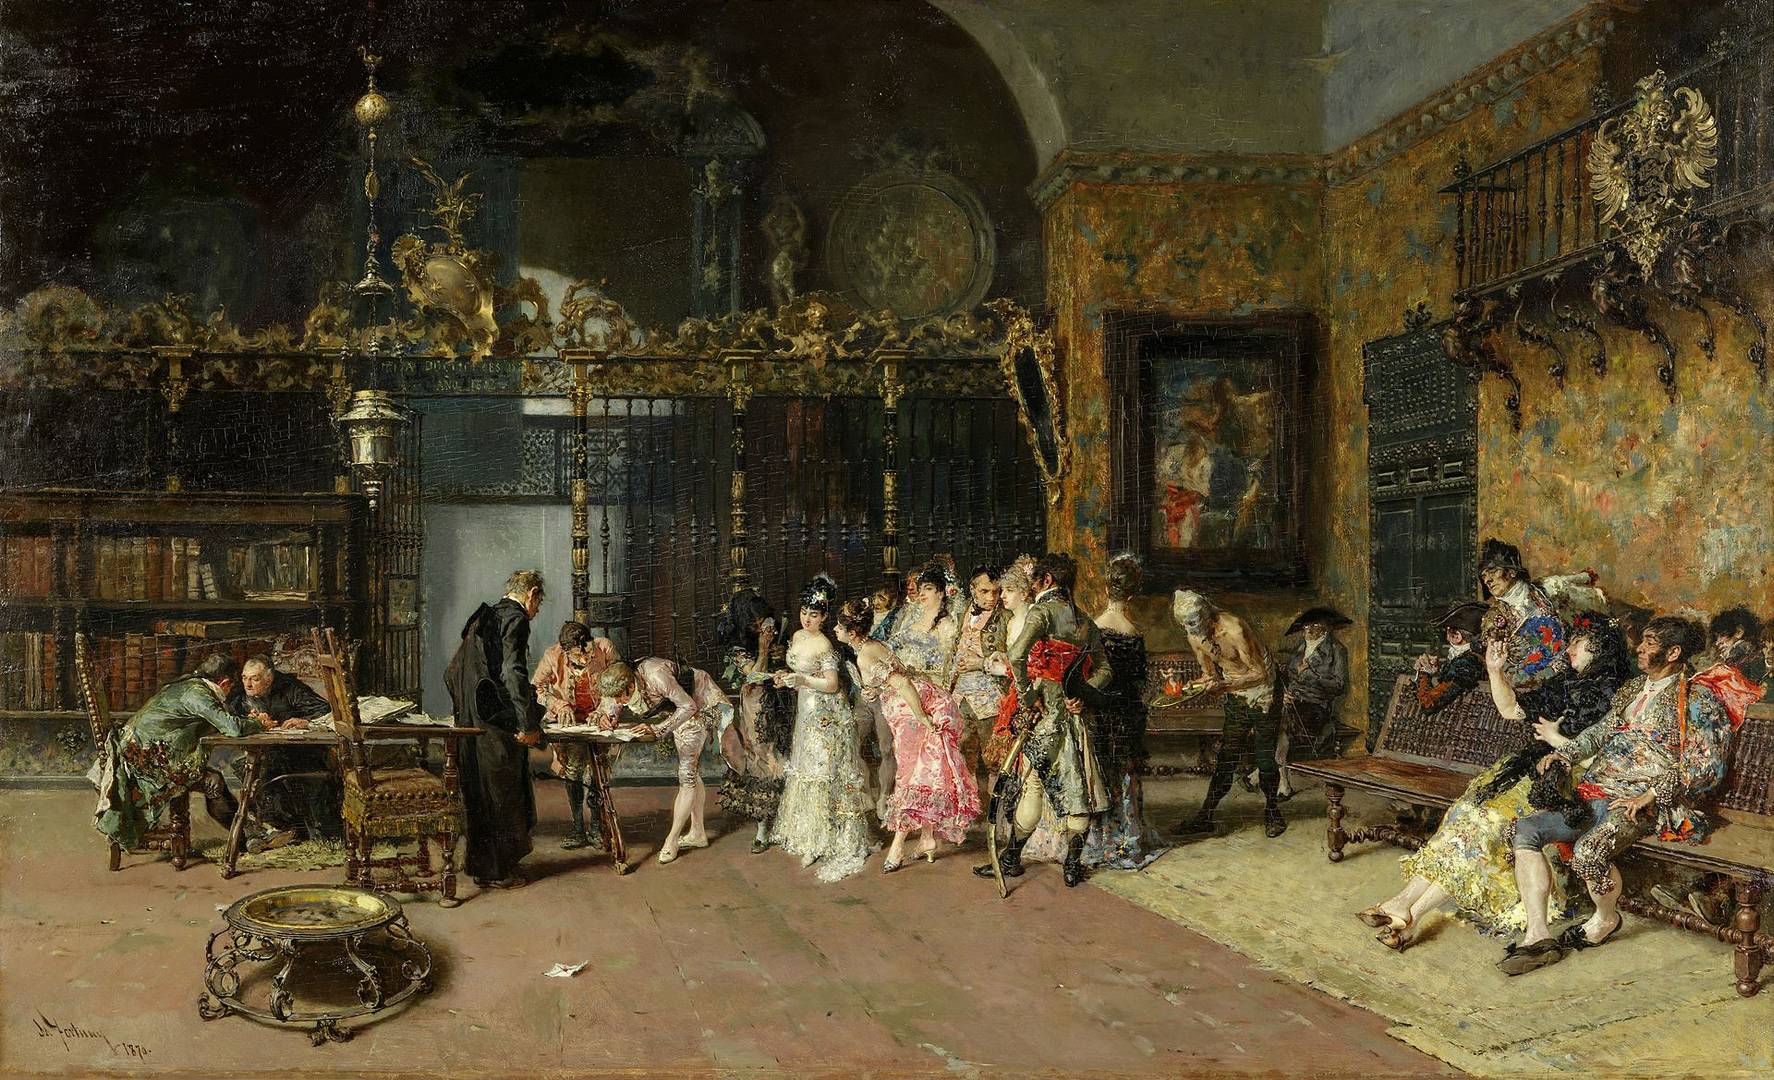 Мариано Фортуни-и-Марсаль. Викарий (Испанская свадьба). 1868-1870